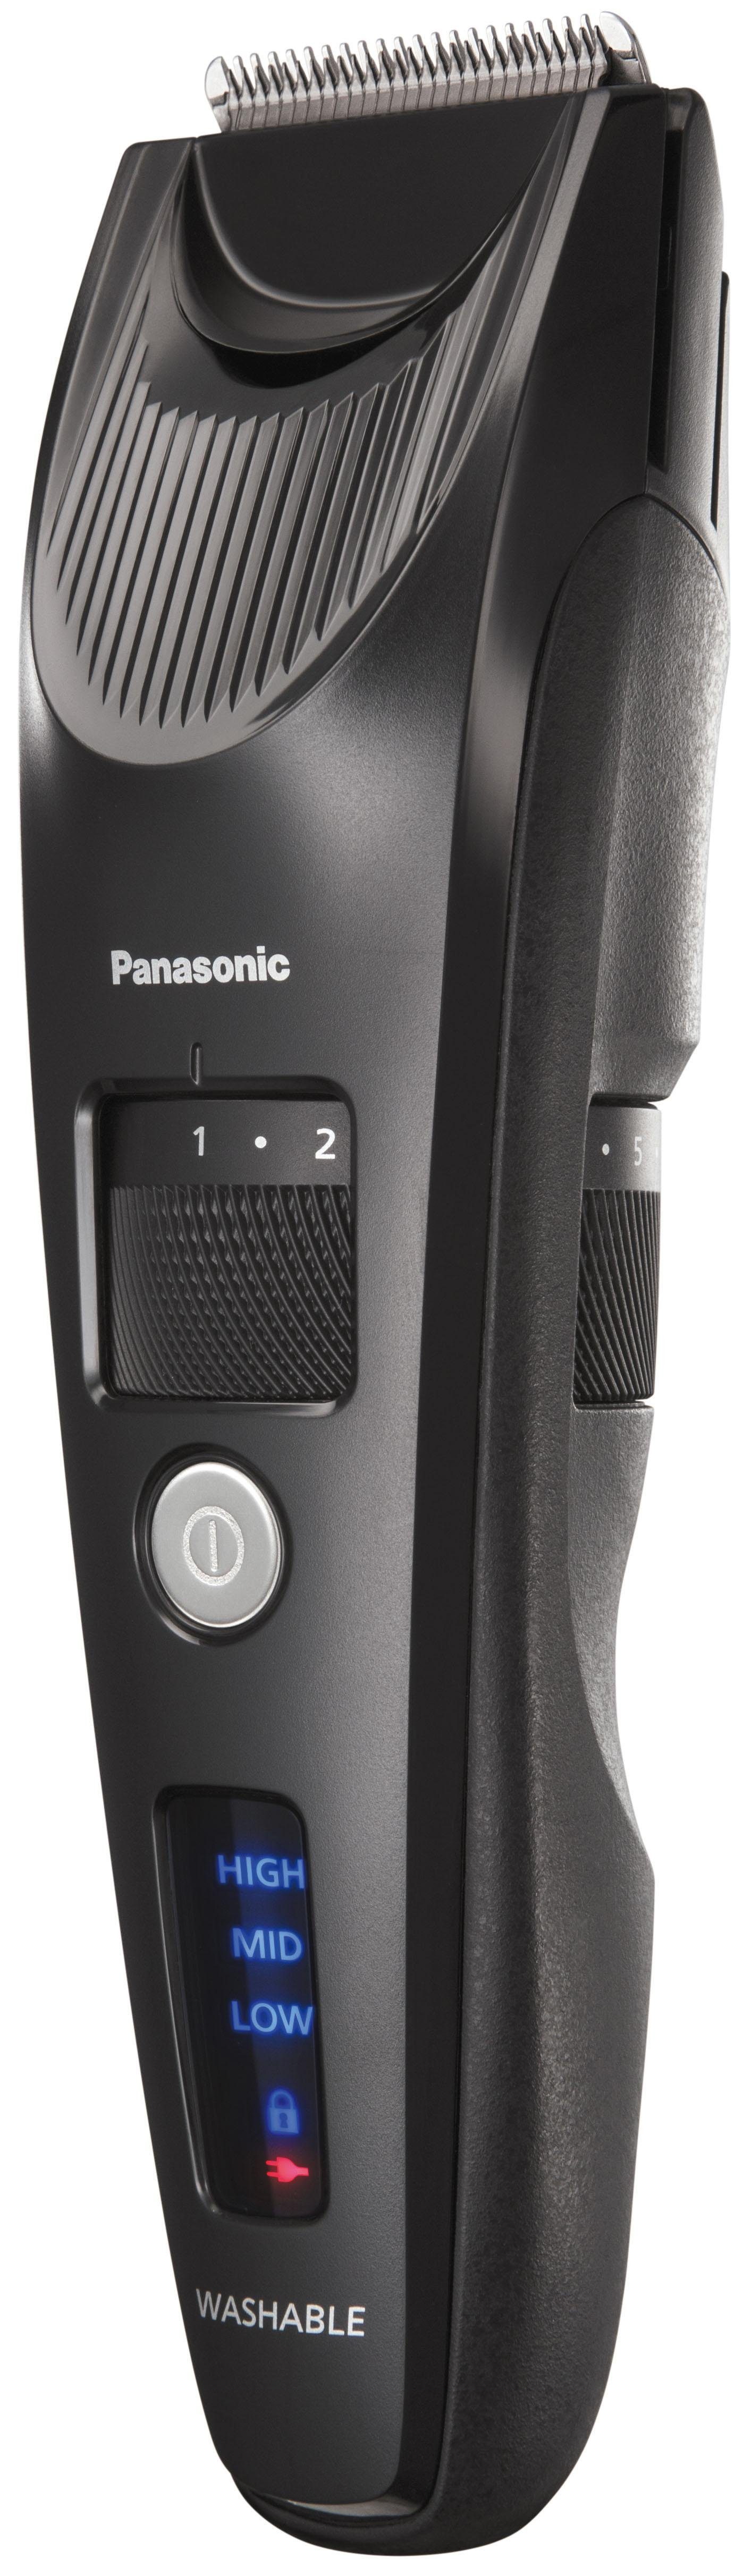 Panasonic Haar- kraftvollem und ER-SC40-K803, Linearmotor mit Bartschneider